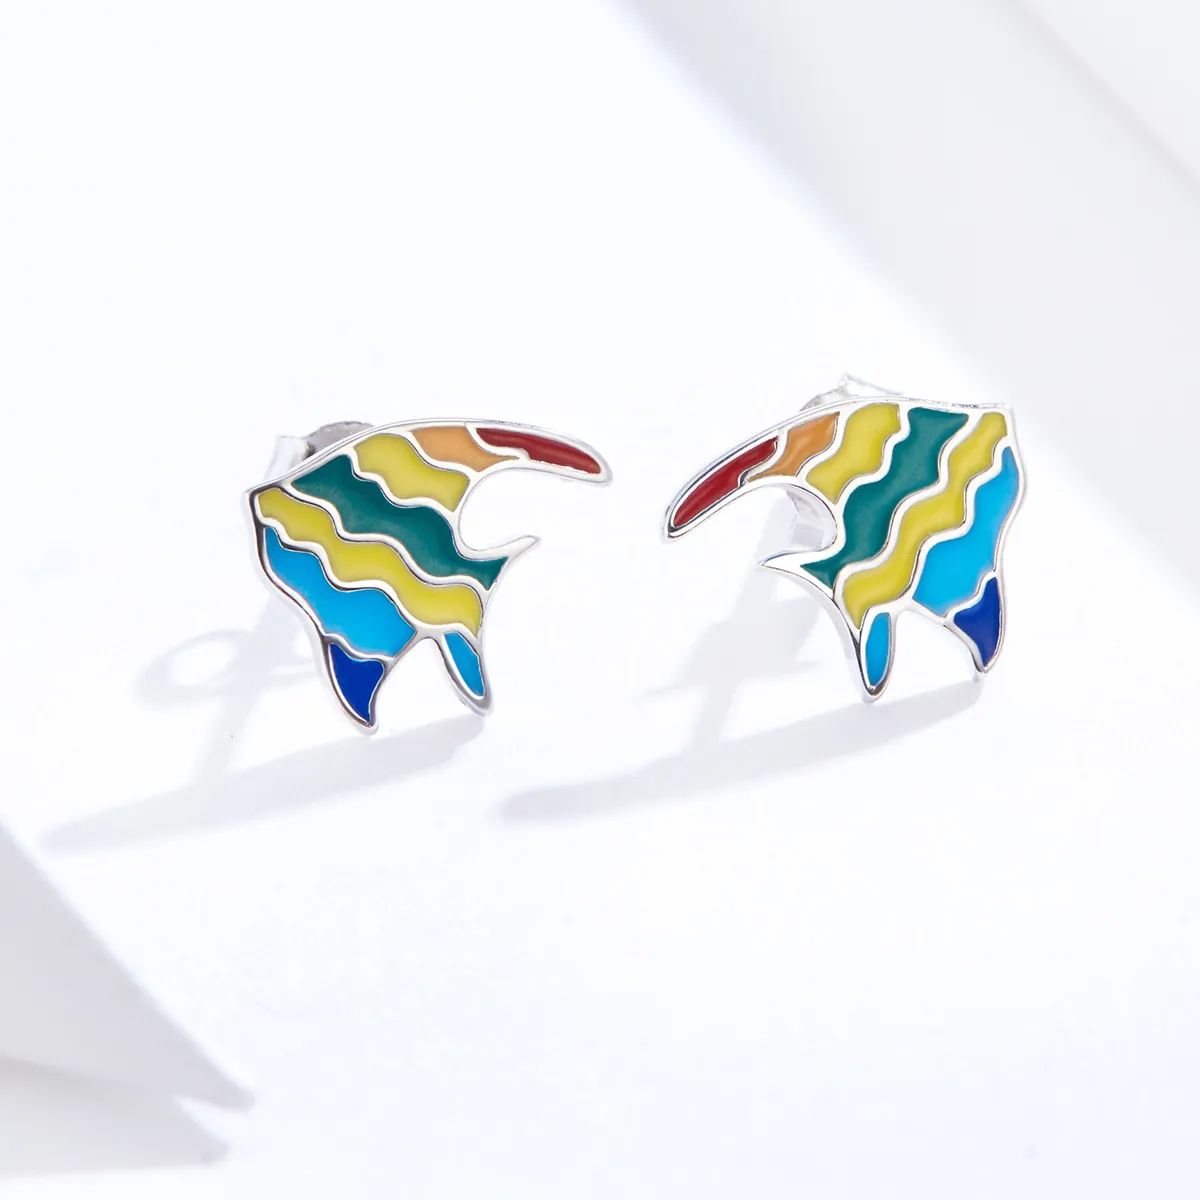 Stud earrings în stilul Pandora cu peștișor în culorile curcubeului - SCE824